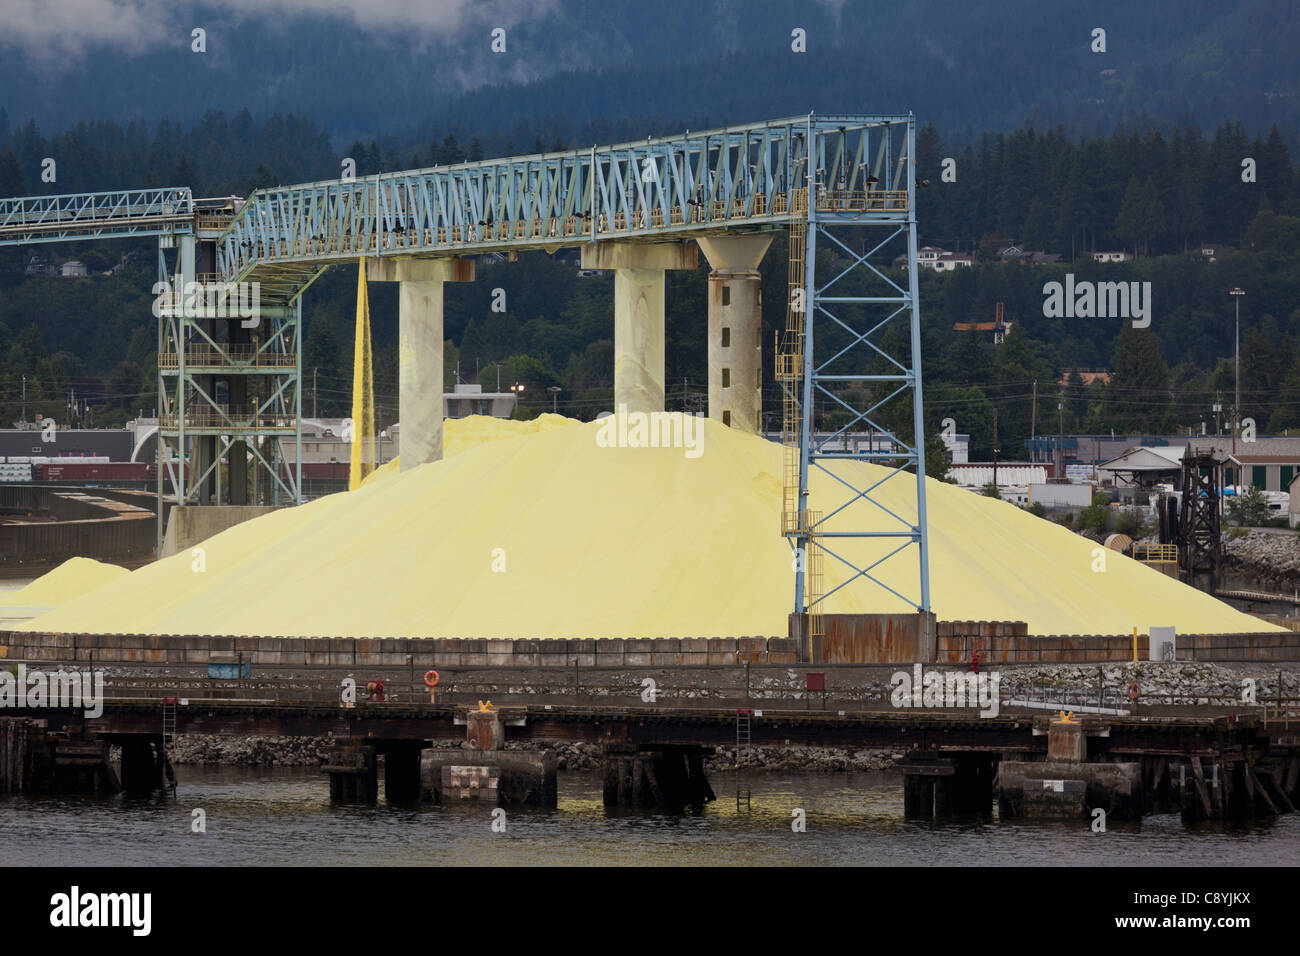 Un tas de soufre est traitée sur le bord de l'eau à Vancouver, Canada Banque D'Images